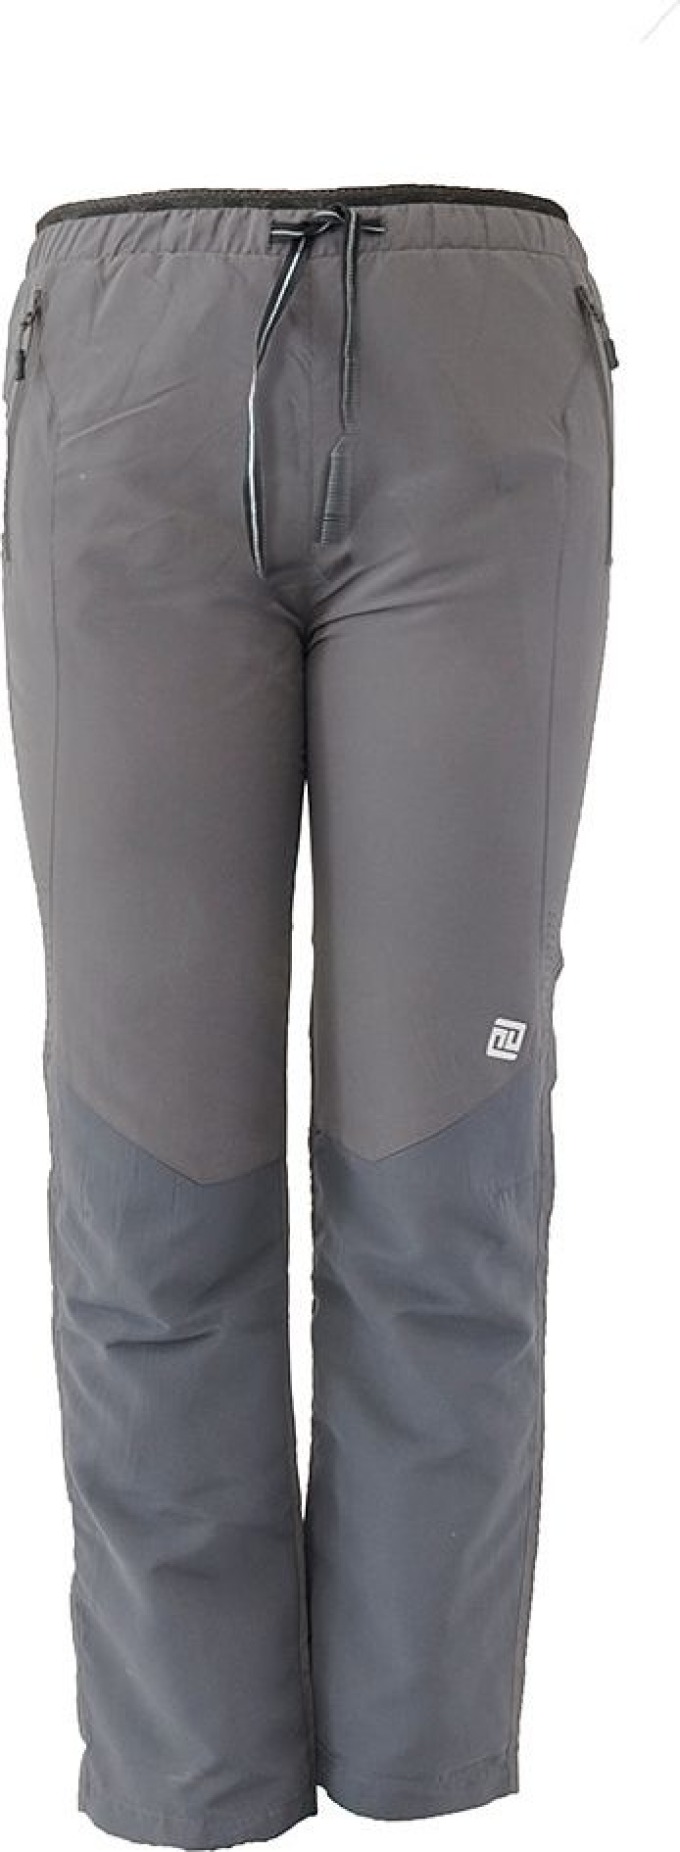 kalhoty sportovní outdoorové, podšité bavlněnou podšívkou, Pidilidi, PD1107-09, šedá - 98 | 3roky